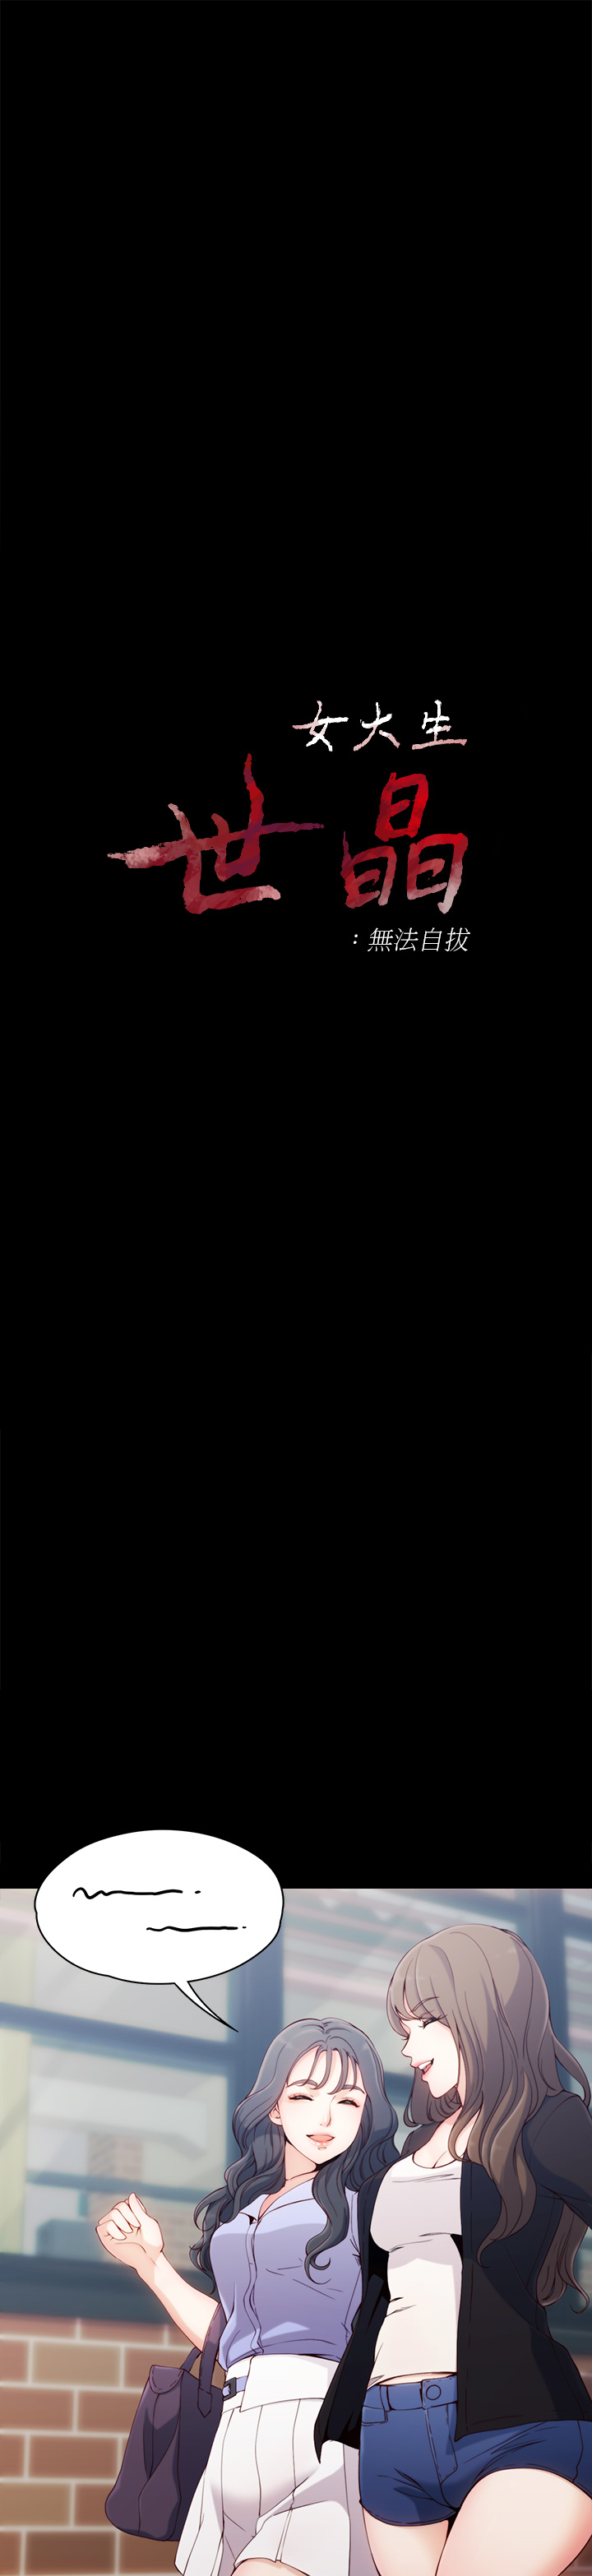 [朴敏&金Zetta]女大生世晶:无法自拔 EP.1(正體中文)高畫質版本 [朴敏&金Zetta]女大生世晶:無法自拔 第1話 女大生世晶 2019.02.27 高畫質版本